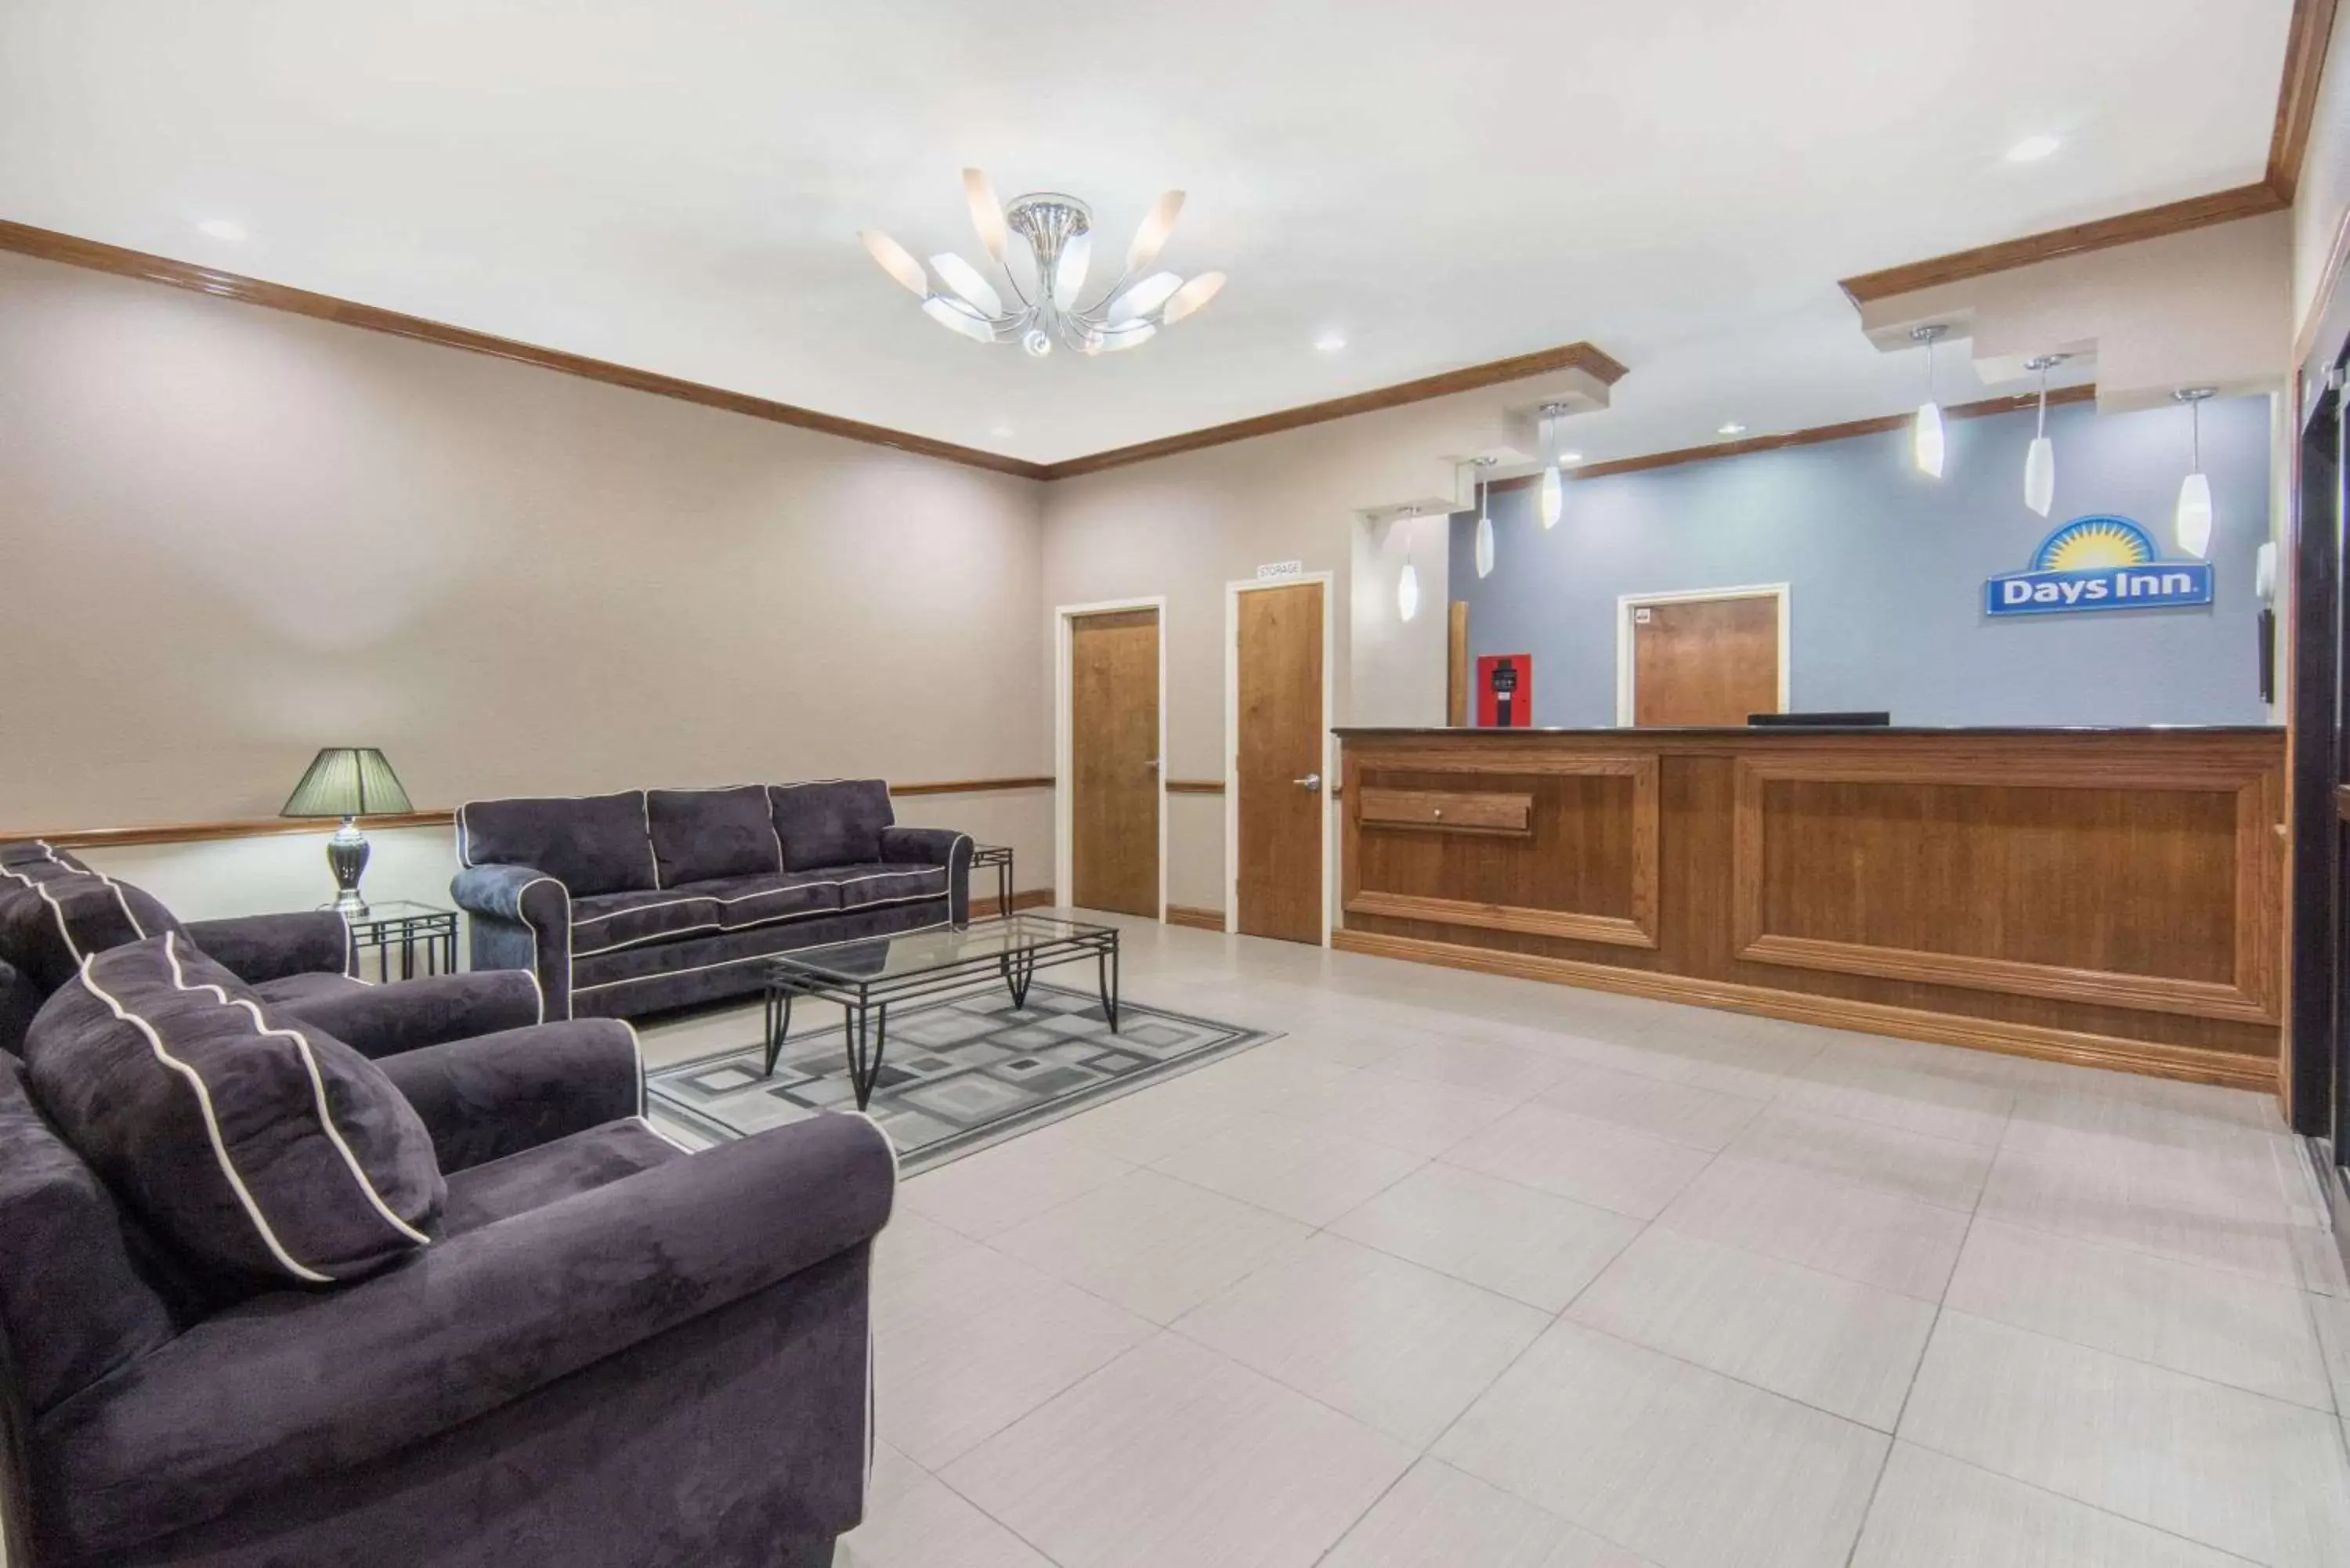 Lobby or reception, Lobby/Reception in Days Inn by Wyndham Baytown East